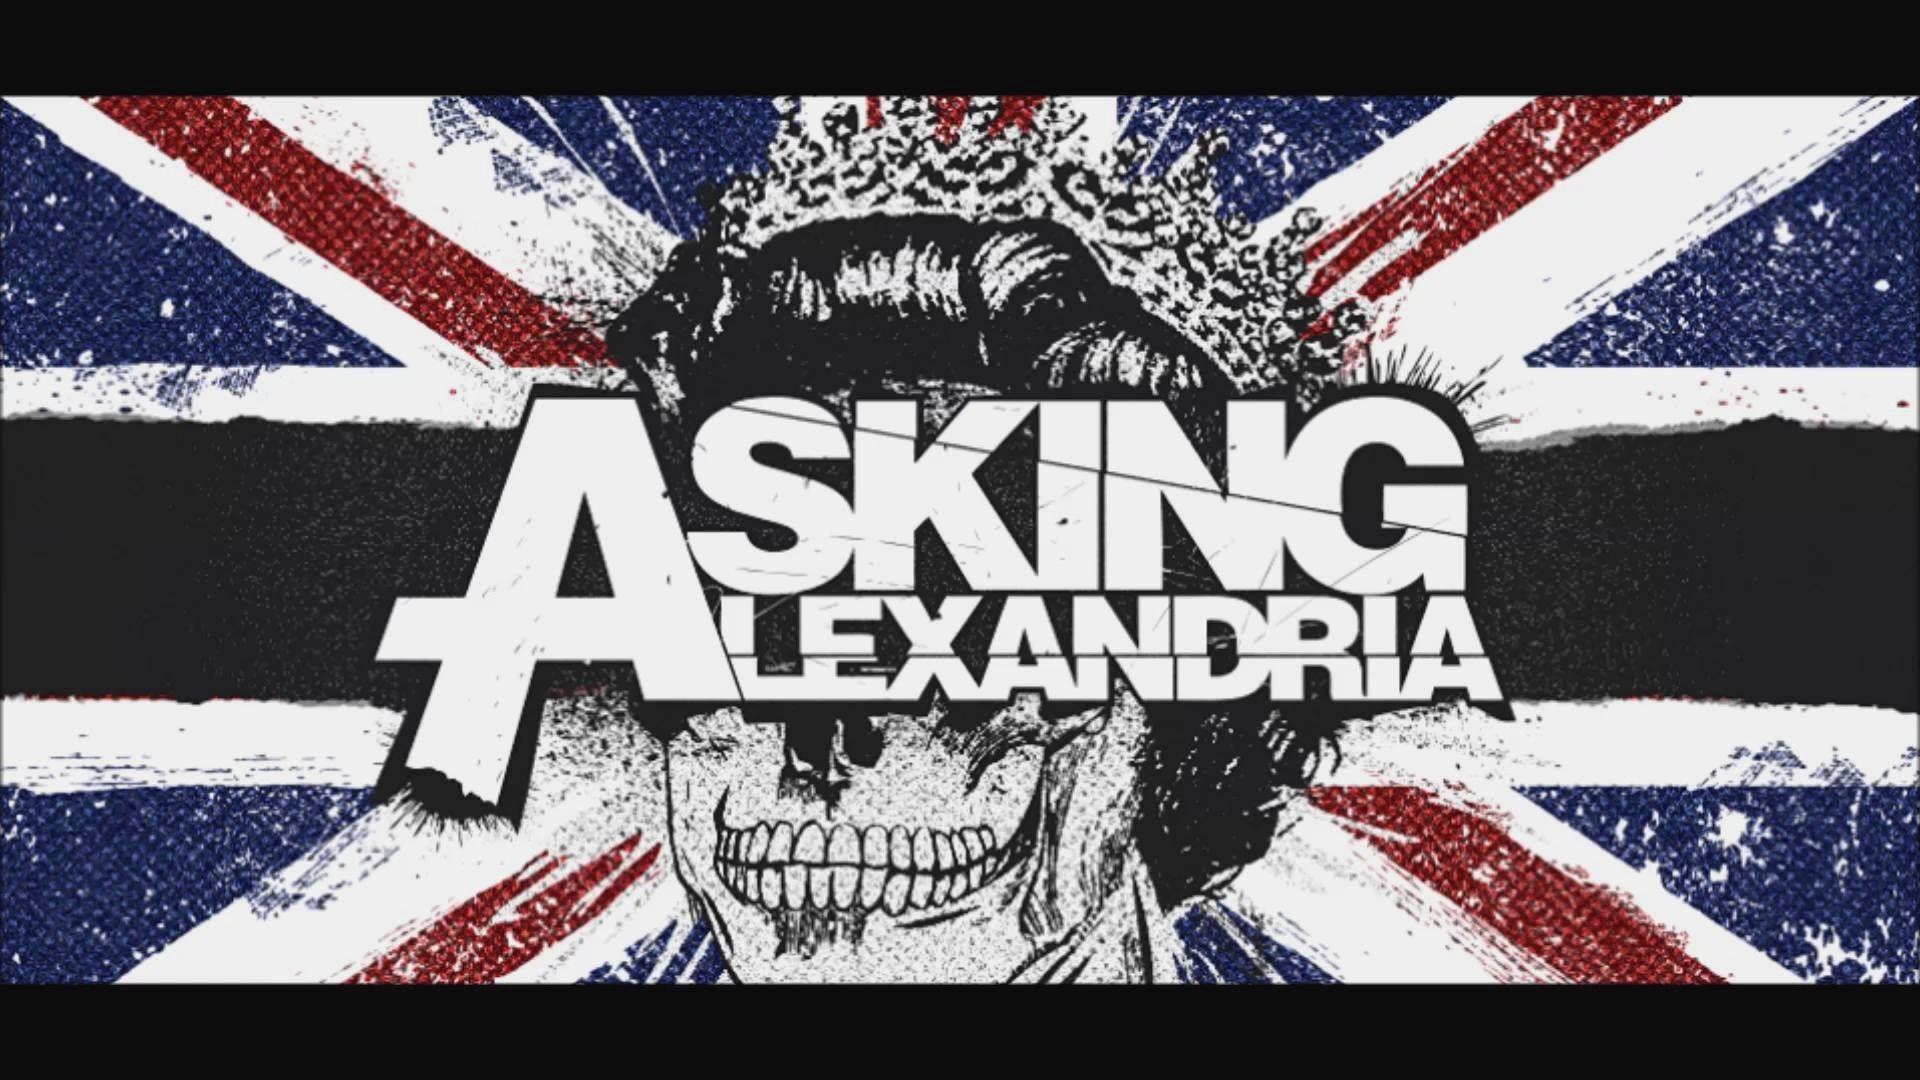 Asking Alexandria Logo - Asking Alexandria Logo Wallpaper 2017 ·①